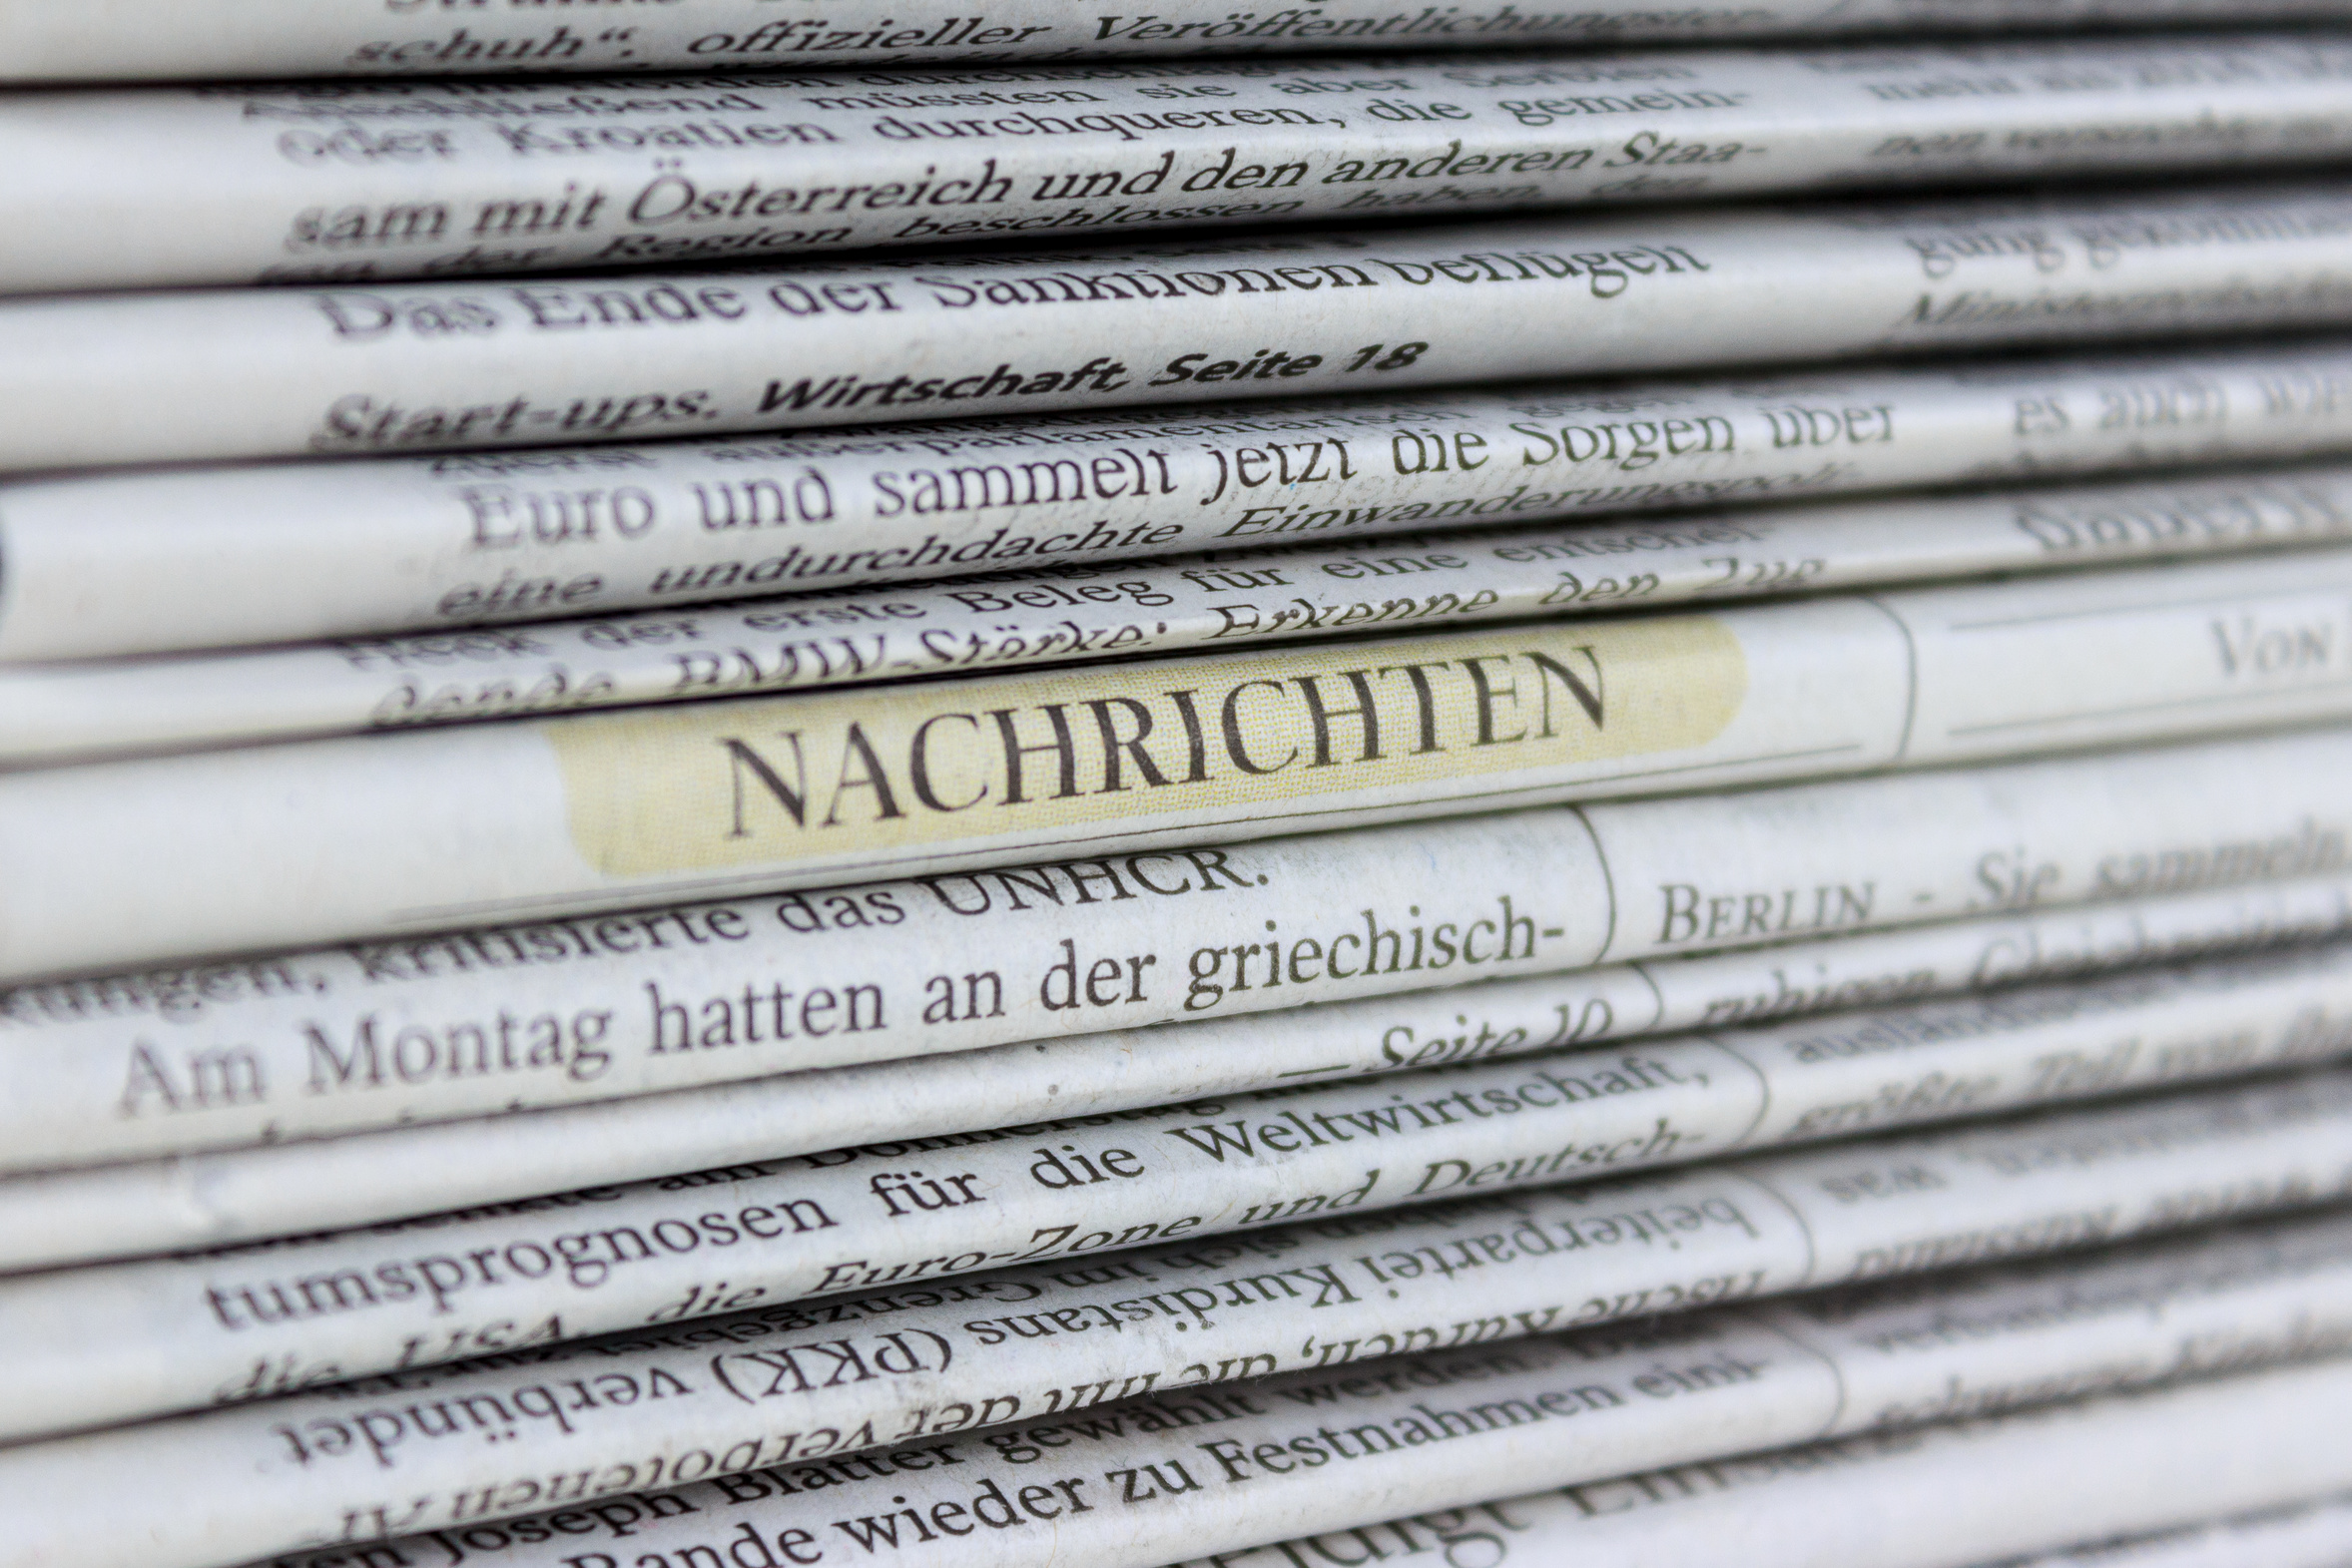 Ein Stapel an Zeitungen. Bei einer der Zeitungen ist das Wort "Nachrichten" farblich hervogehoben worden.